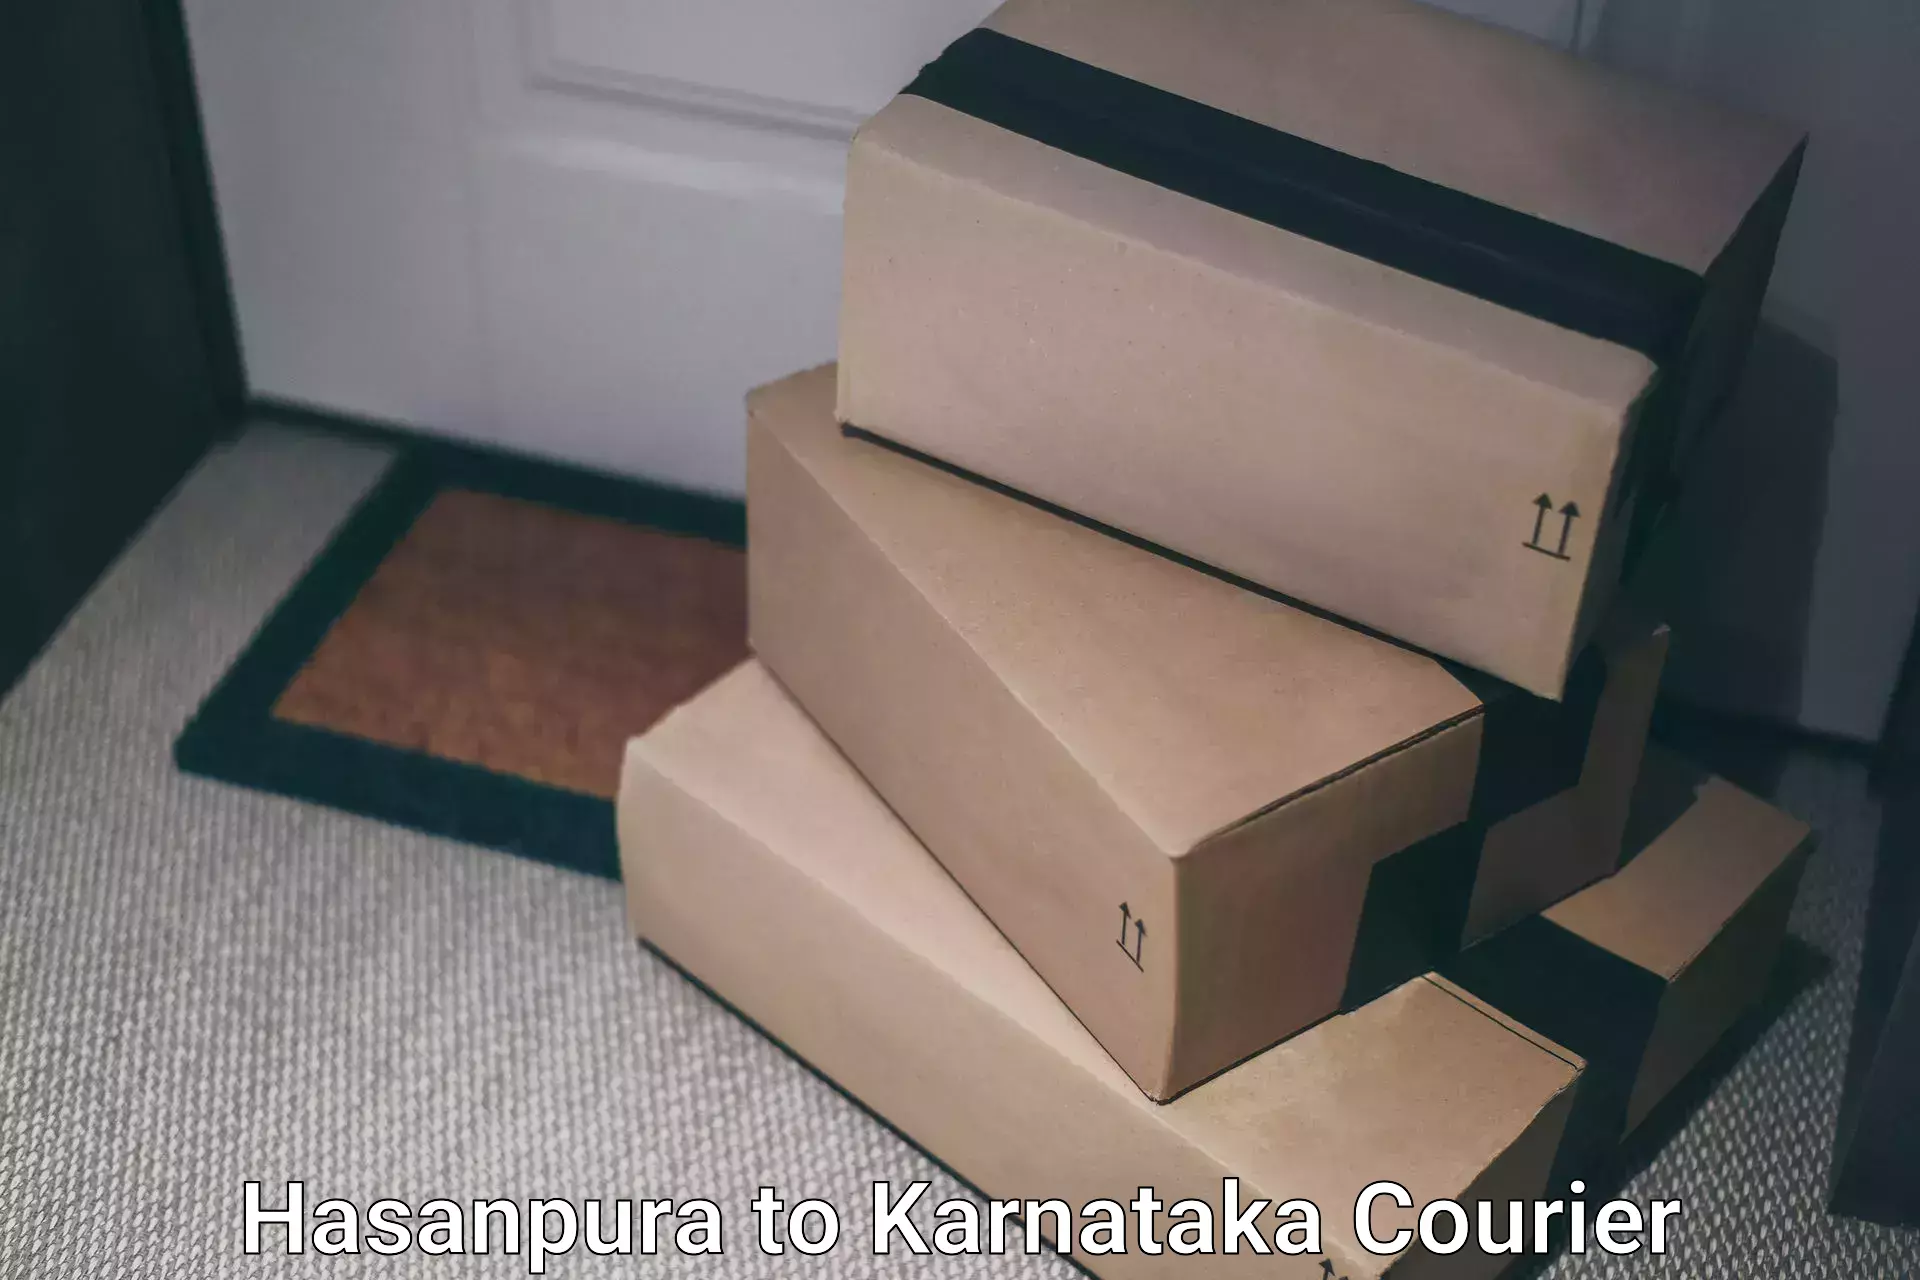 Affordable parcel service Hasanpura to Udupi